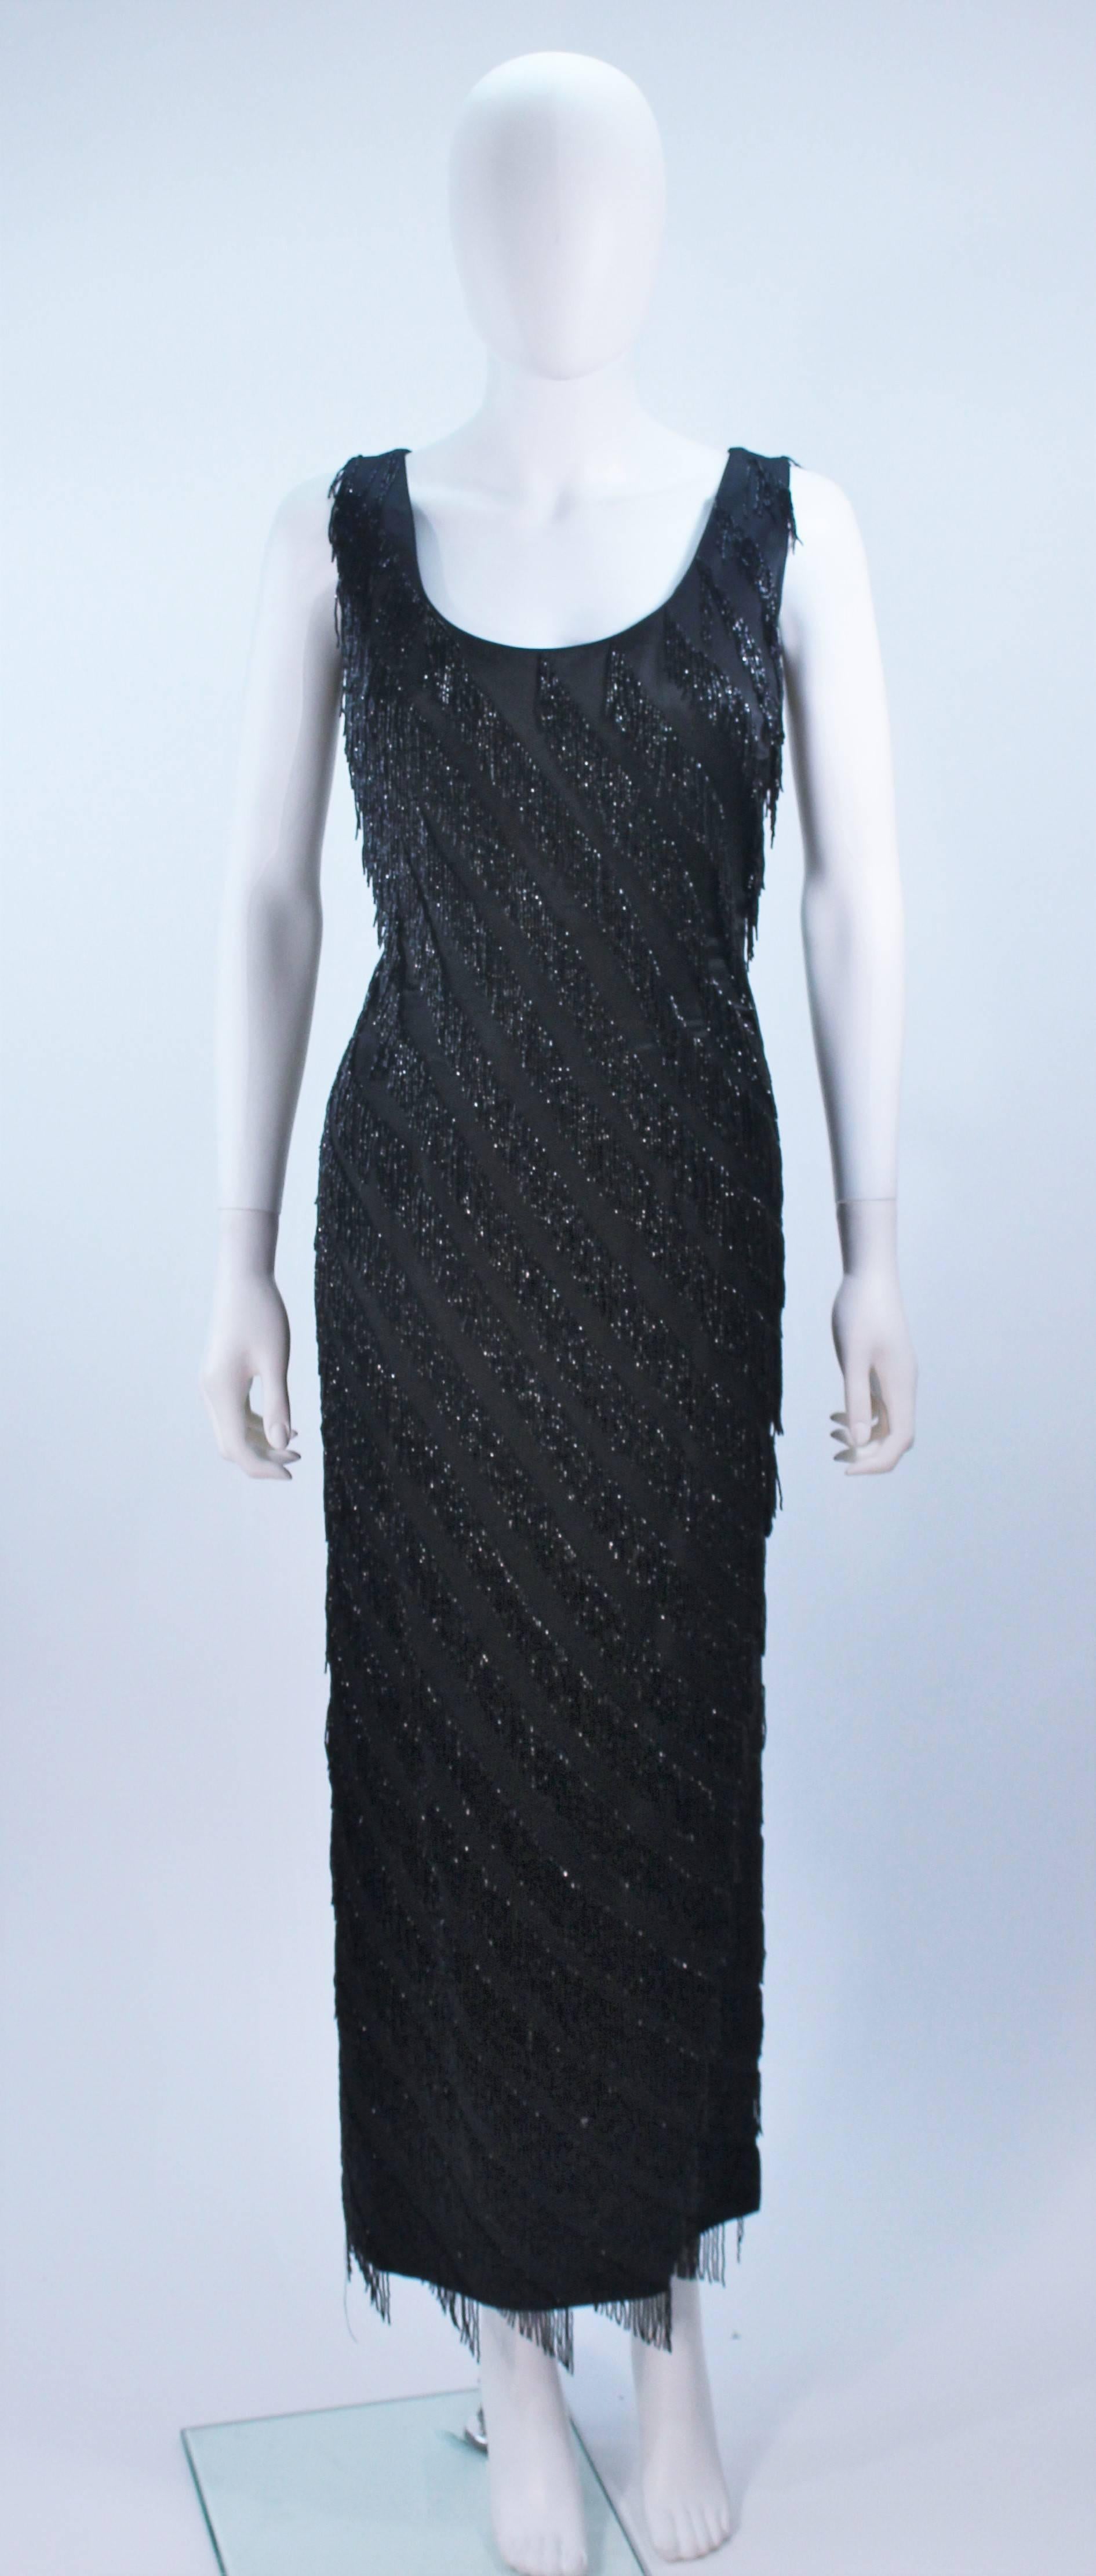  Diese Pauline Shen  Das Kleid besteht aus schwarzer Seide und ist mit Perlenfransen verziert. Es gibt einen Reißverschluss in der Mitte des Rückens. In tollem Vintage-Zustand. 

  **Bitte vergleichen Sie die Maße für persönliche Genauigkeit. Die